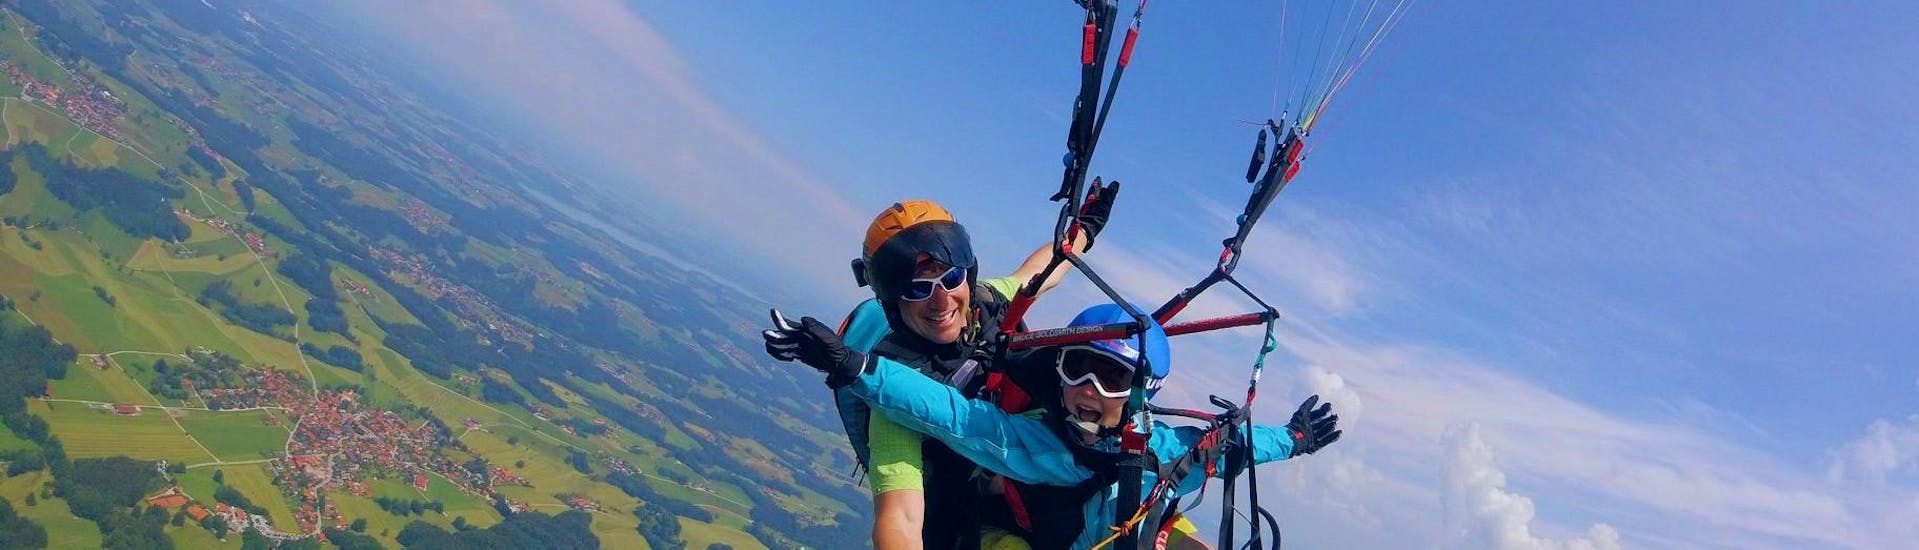 Thermisch tandem paragliding in Kössen.